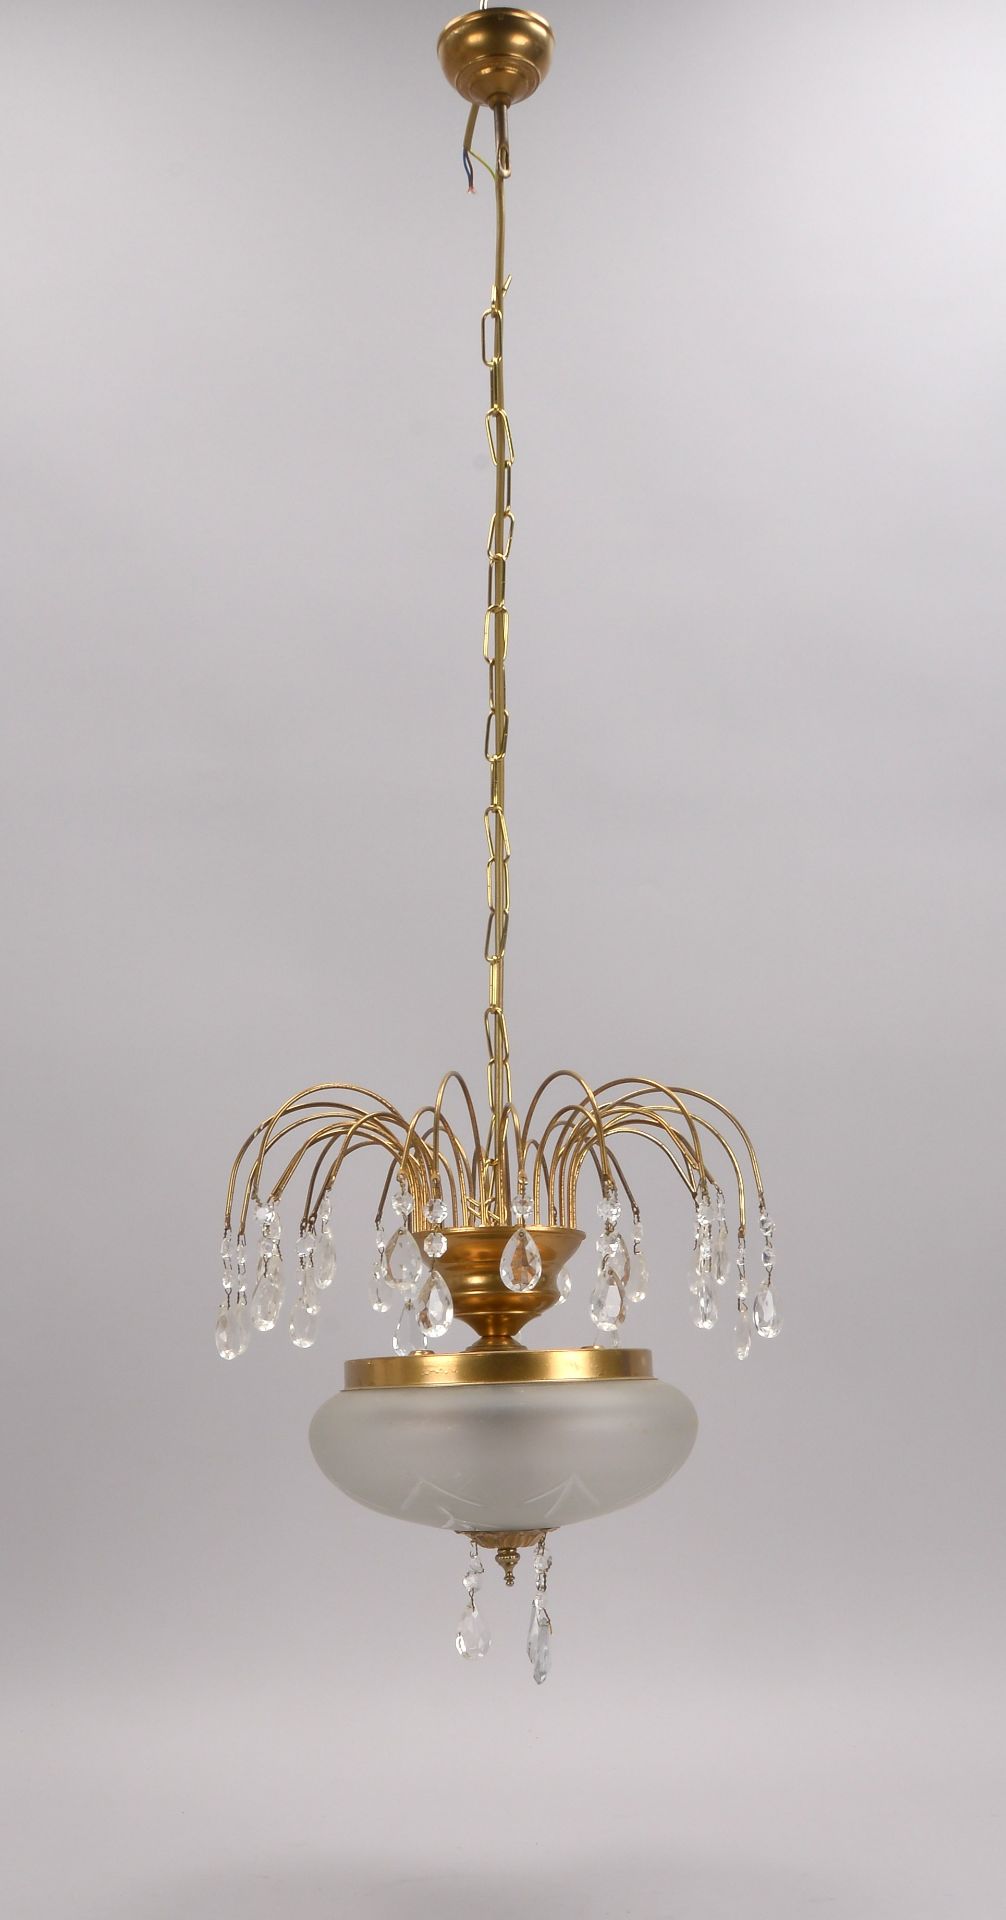 Deckenlampe, 2-flammig, mit Glasschirm, teils mit Kristallbehang, Abhaenghoehe 100 cm, Durchmesser 3 - Image 2 of 2